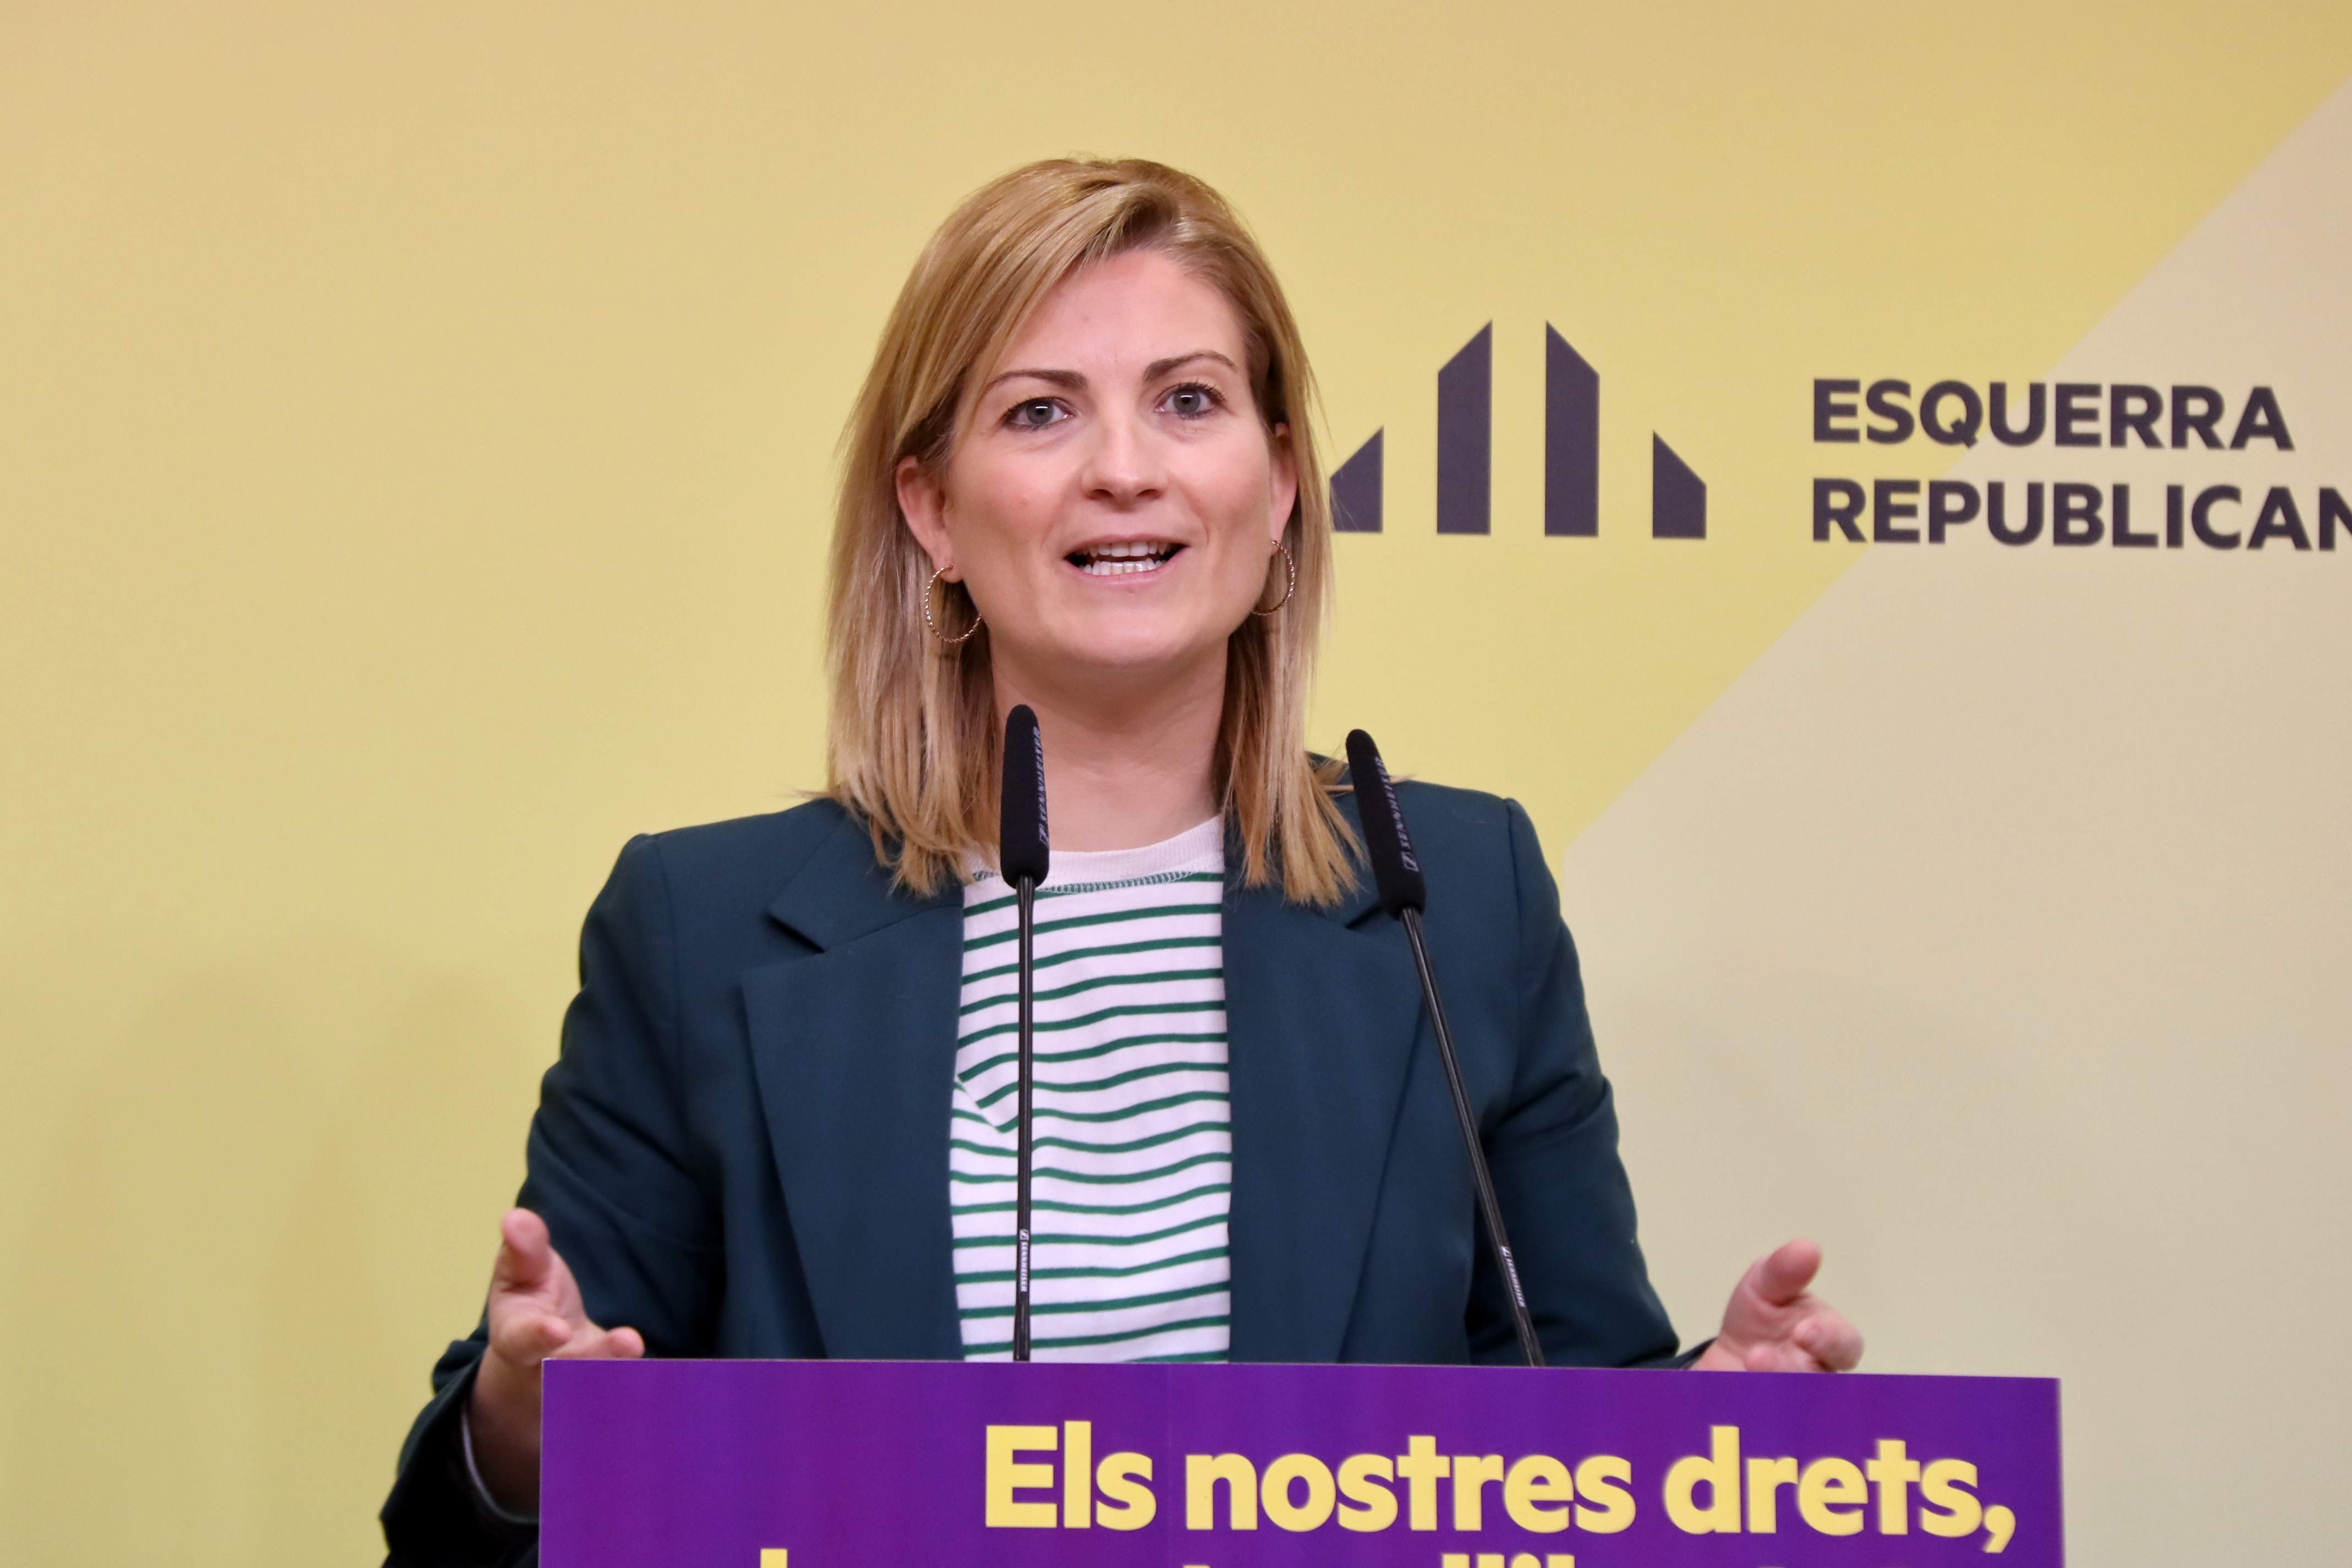 Optimismo en ERC por la aprobación de la ley de amnistía: "Se están acercando posiciones"